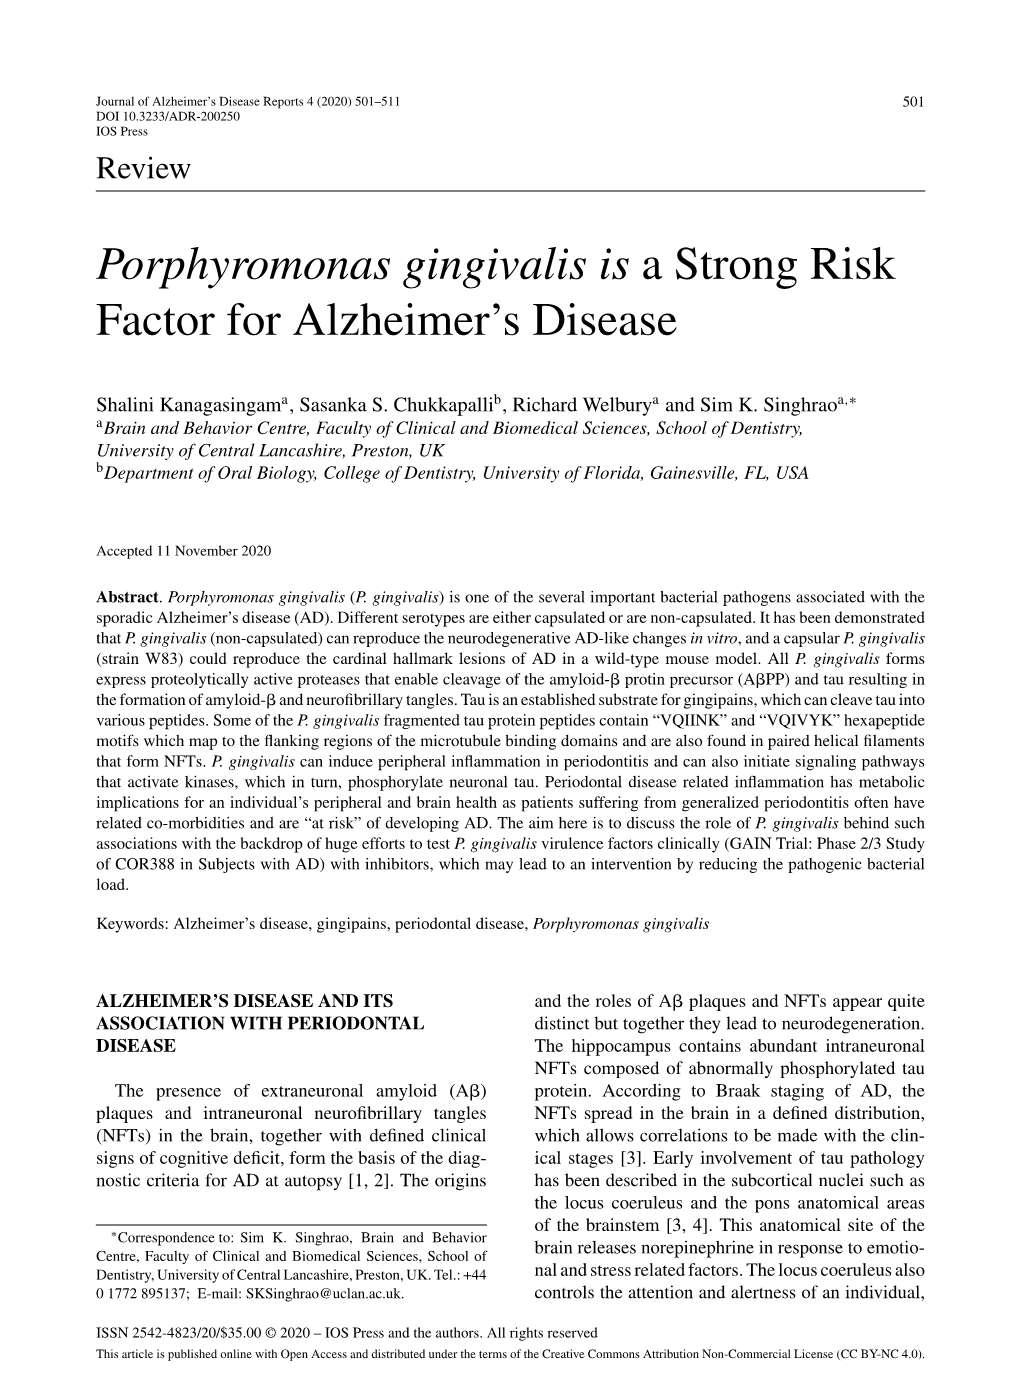 Porphyromonas Gingivalis Is a Strong Risk Factor for Alzheimer's Disease